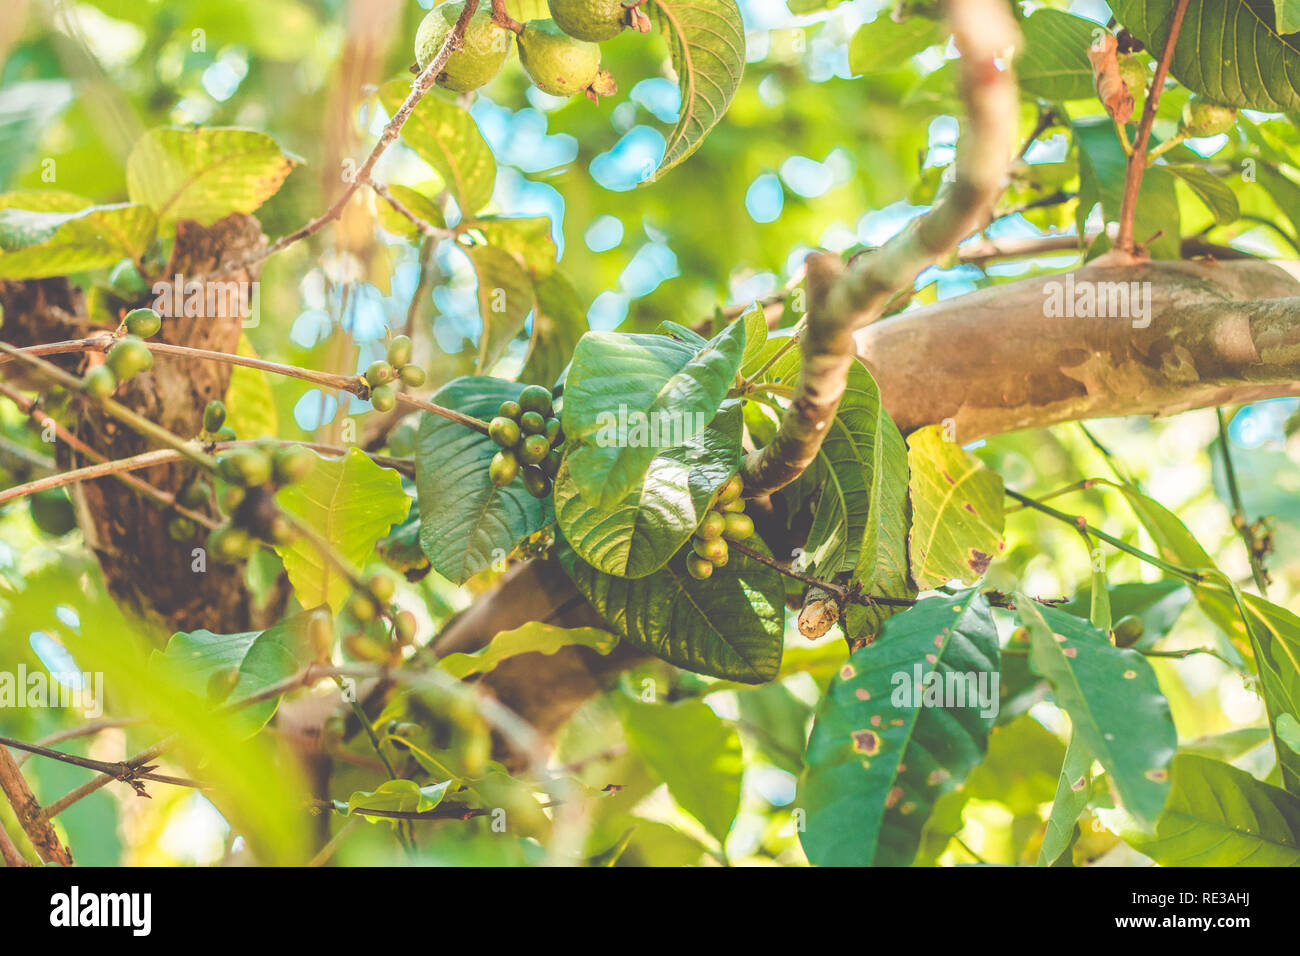 Organic green Coffee beans on the coffee tree. Brazilian Coffee Stock Photo